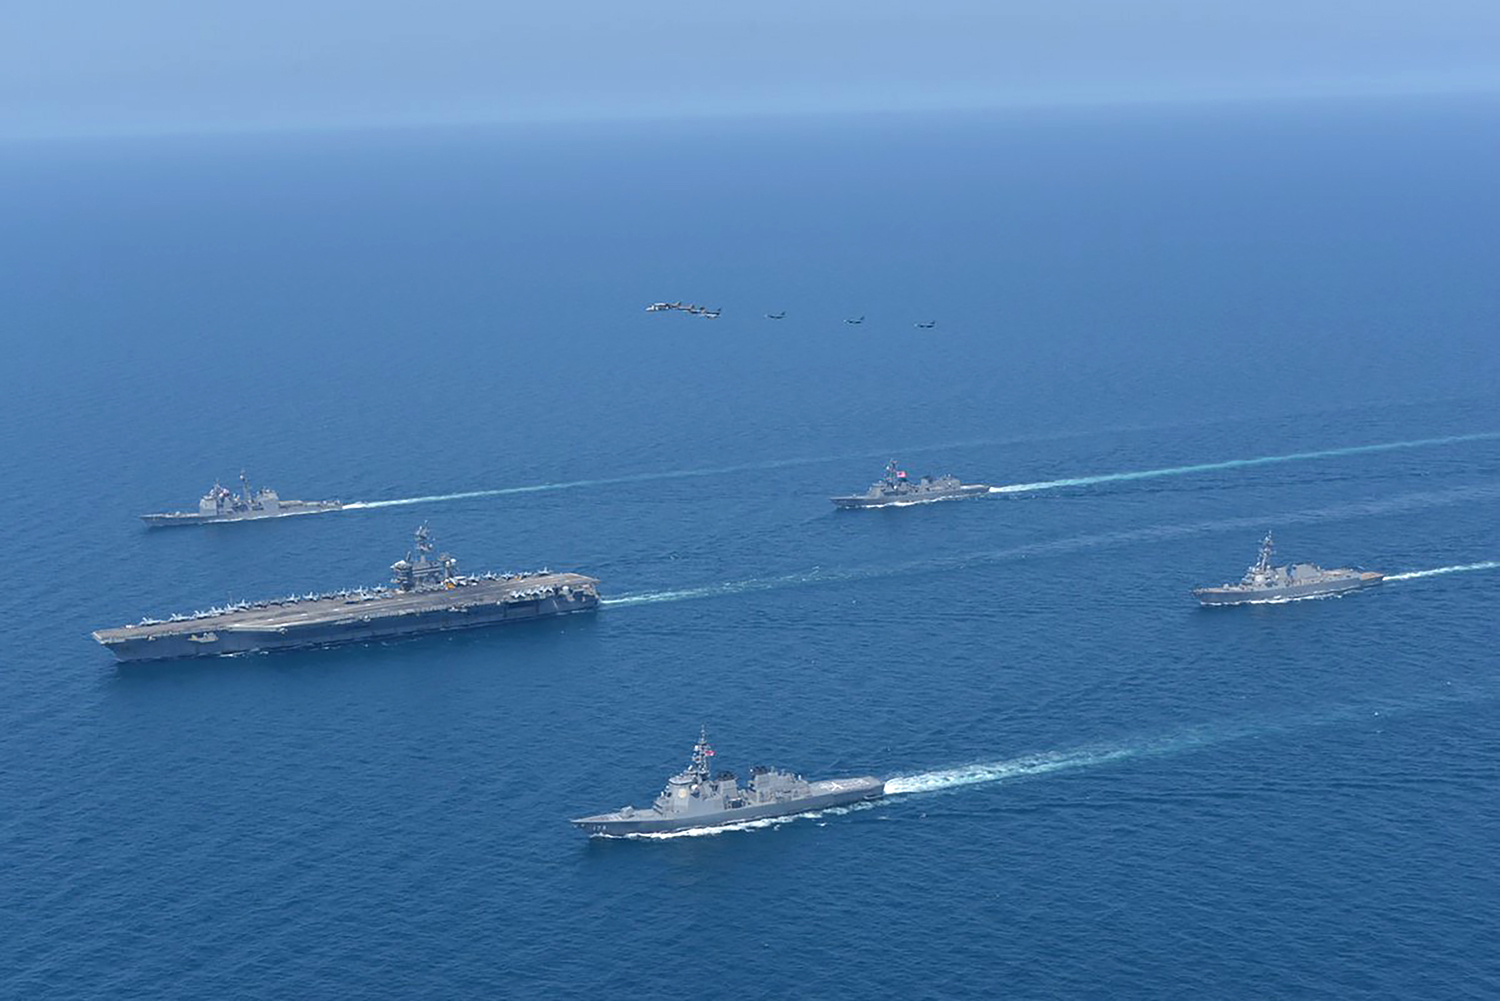 ISTOČNO KINESKO MORE KAO MESTO OPERACIJE OSLOBAĐANJA ZAPLENJENOG PLOVILA: Rusija i Kina završile zajedničke pomorske - vojne vežbe!